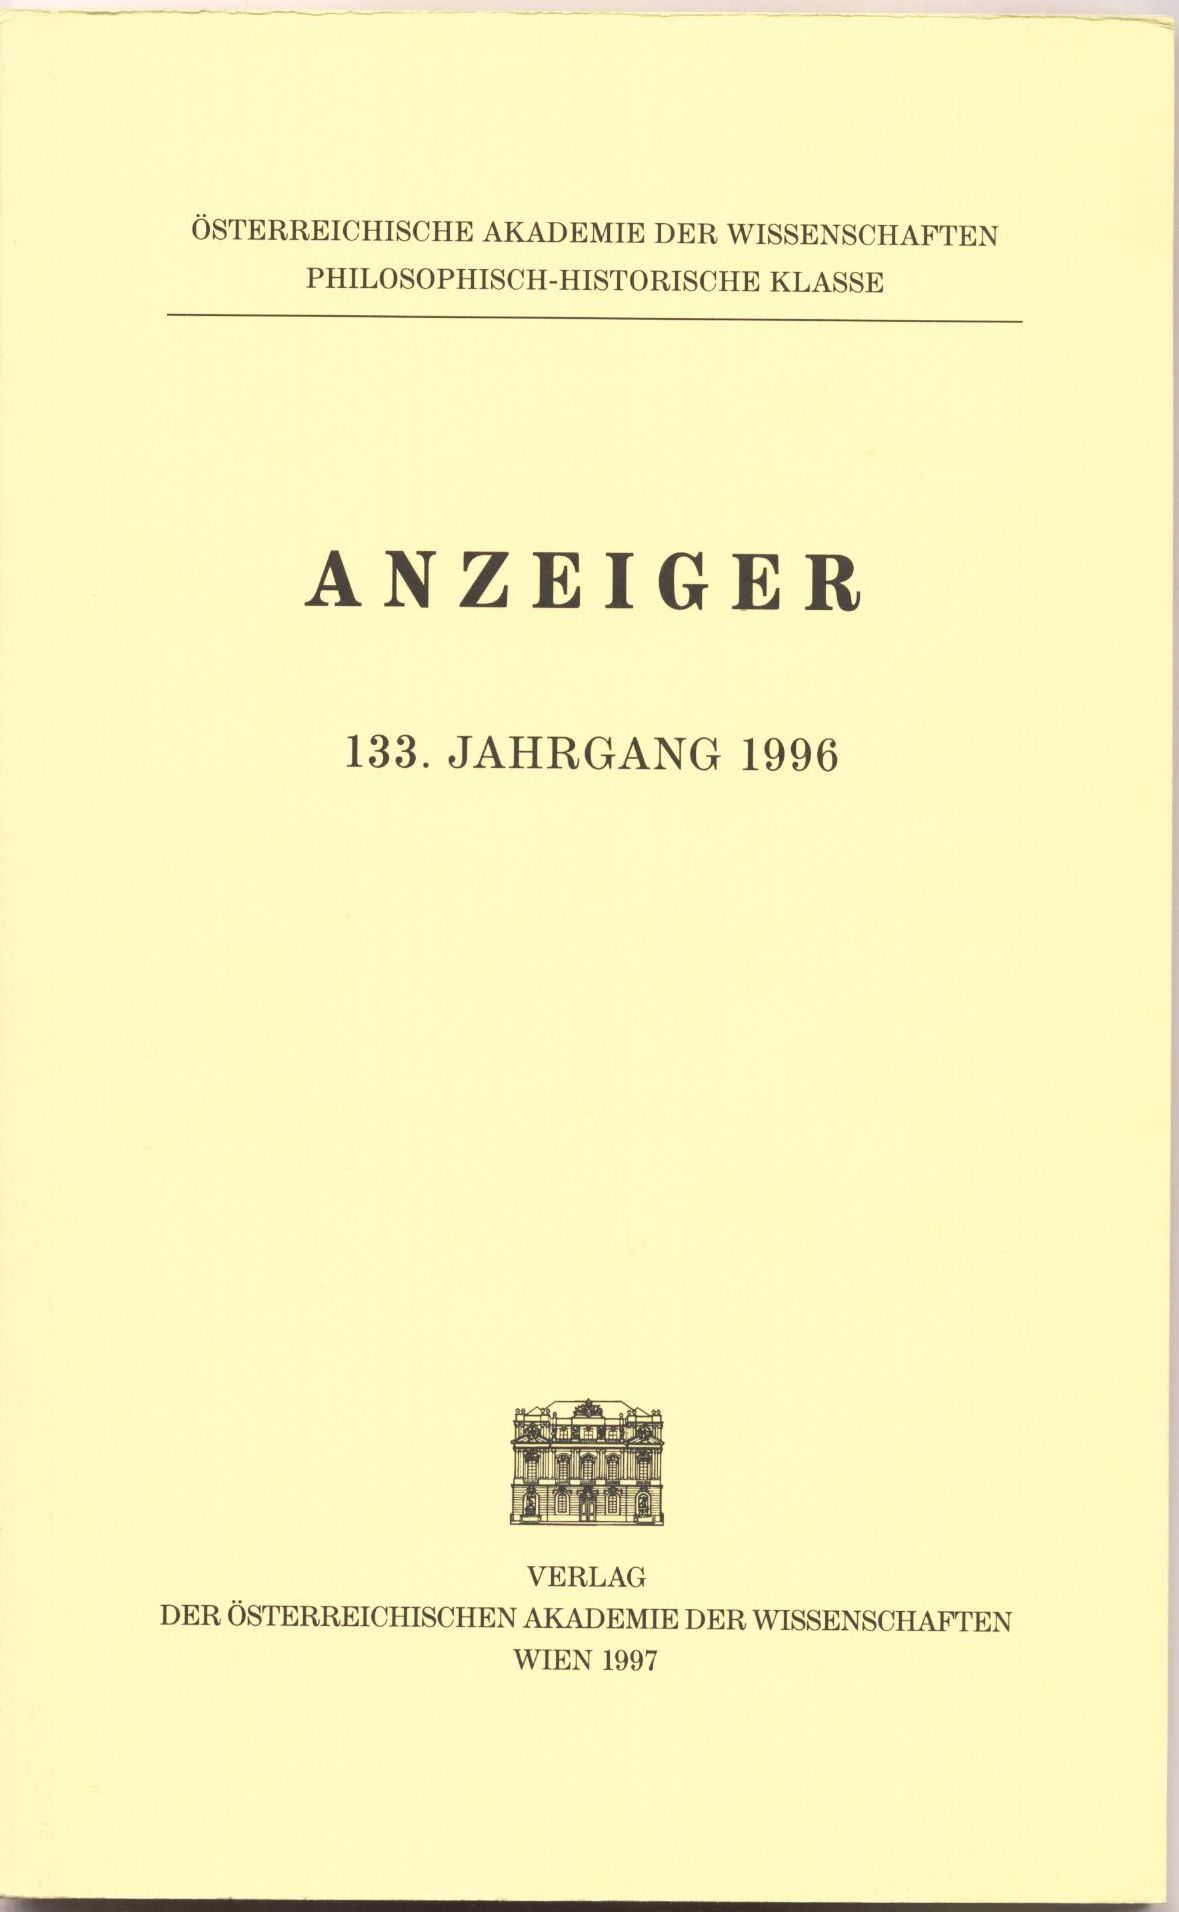 Anzeiger 133. Jahrgang 1966 - Österreichische Akademie der Wissenschaften